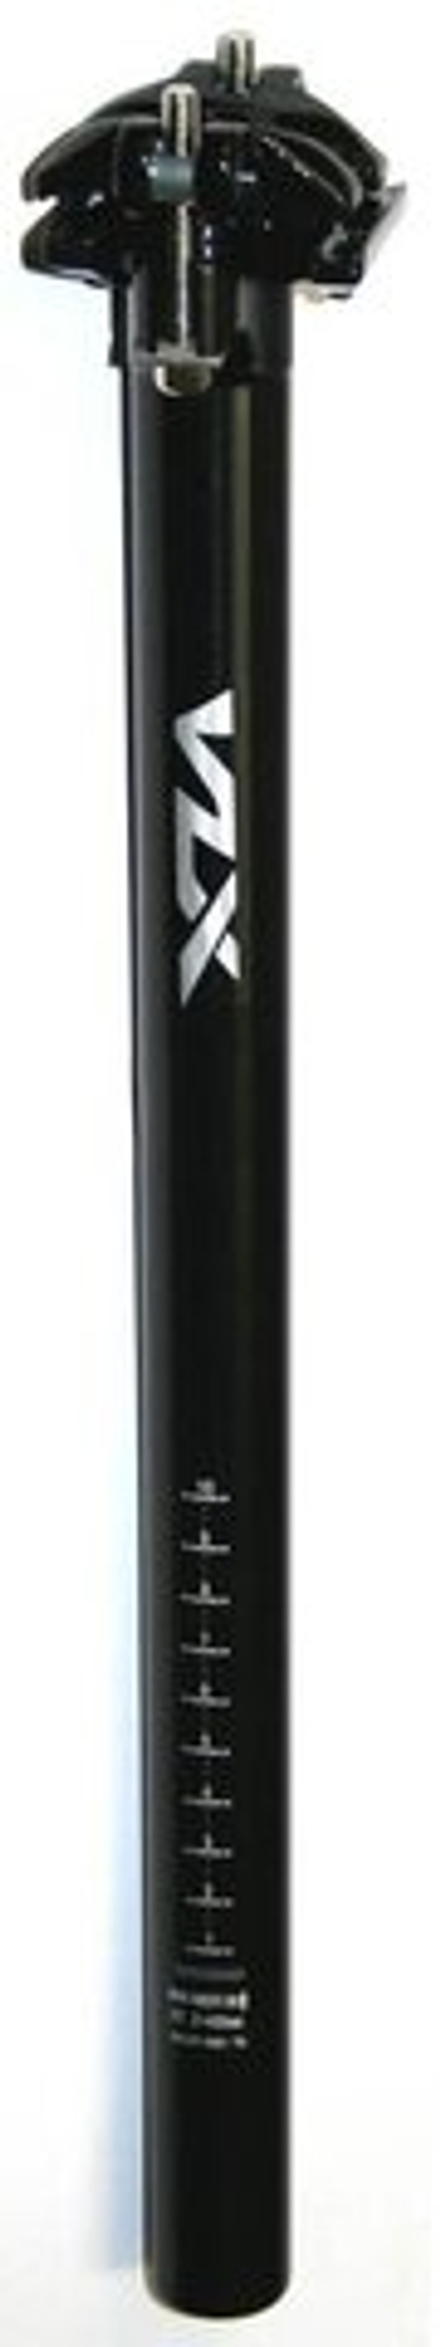 Штырь подседельный алюм, Ø27,2х400мм, 2 болта, вылет 0 мм, чёрный. VLX лого.VLX-SP02